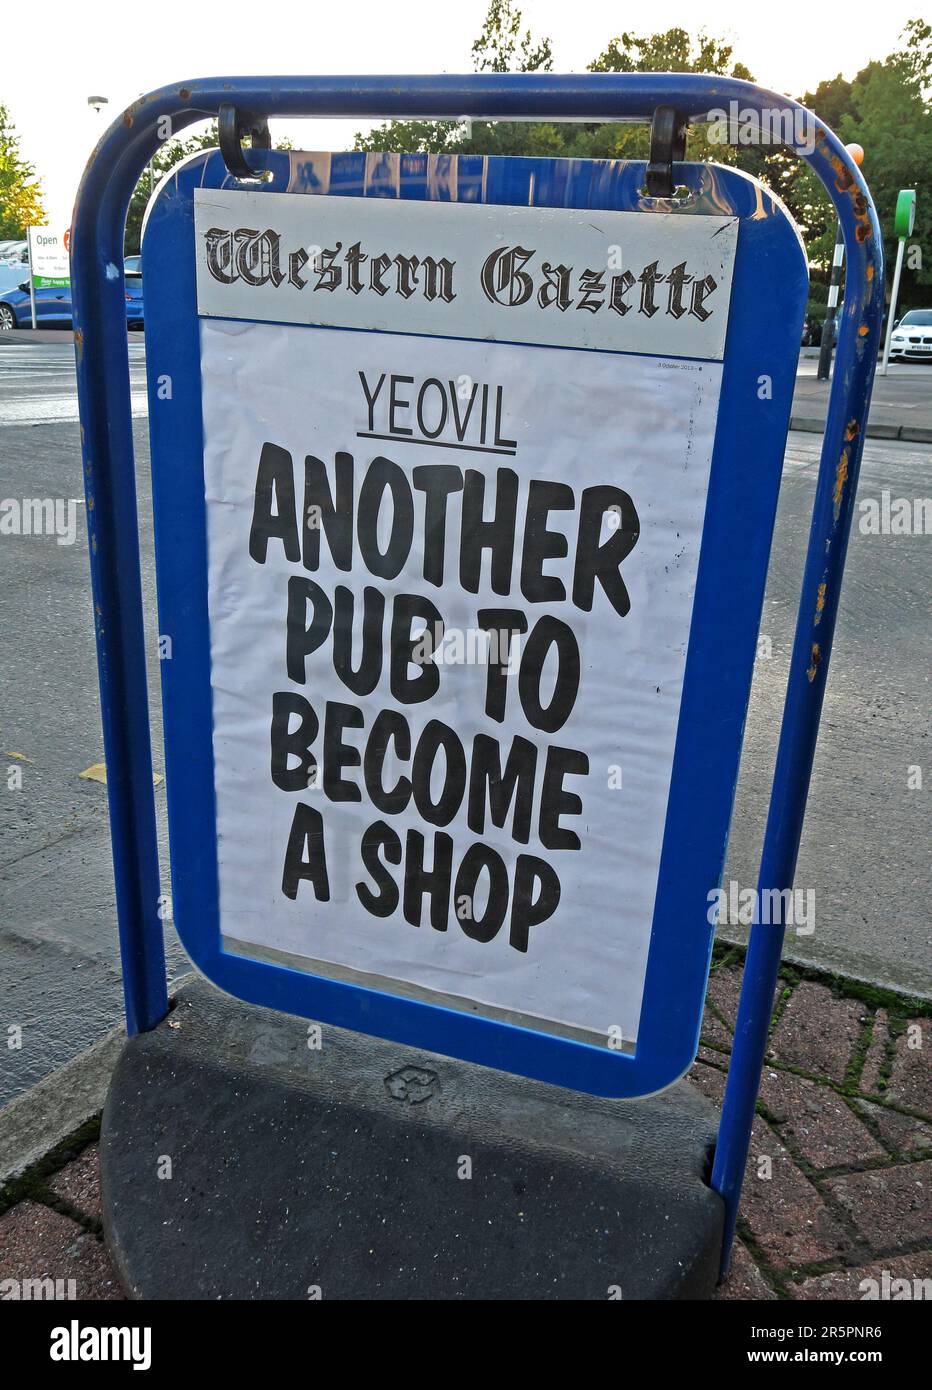 Encore un autre pub pour devenir un magasin, titre de la Yeovil Western Gazette, Somerset, sud-ouest de l'Angleterre, Royaume-Uni Banque D'Images